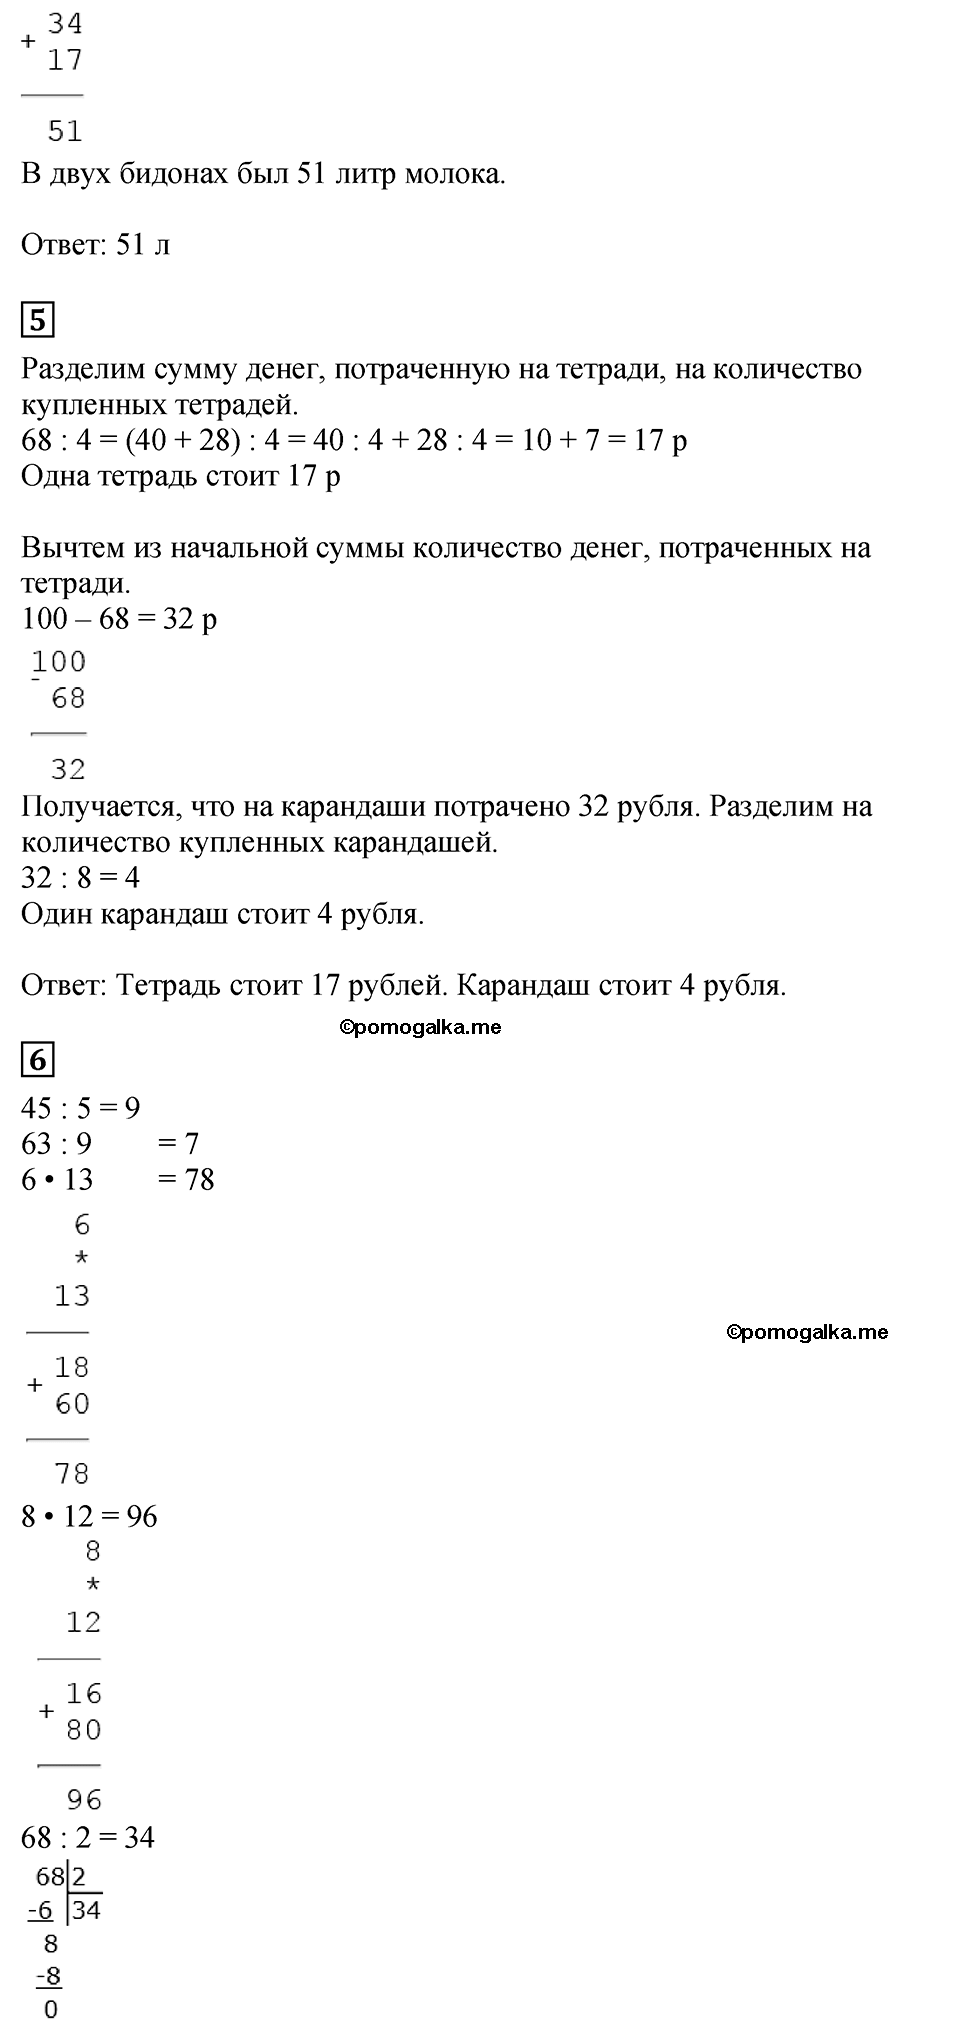 Страница №37 Часть 2 математика 3 класс Дорофеев